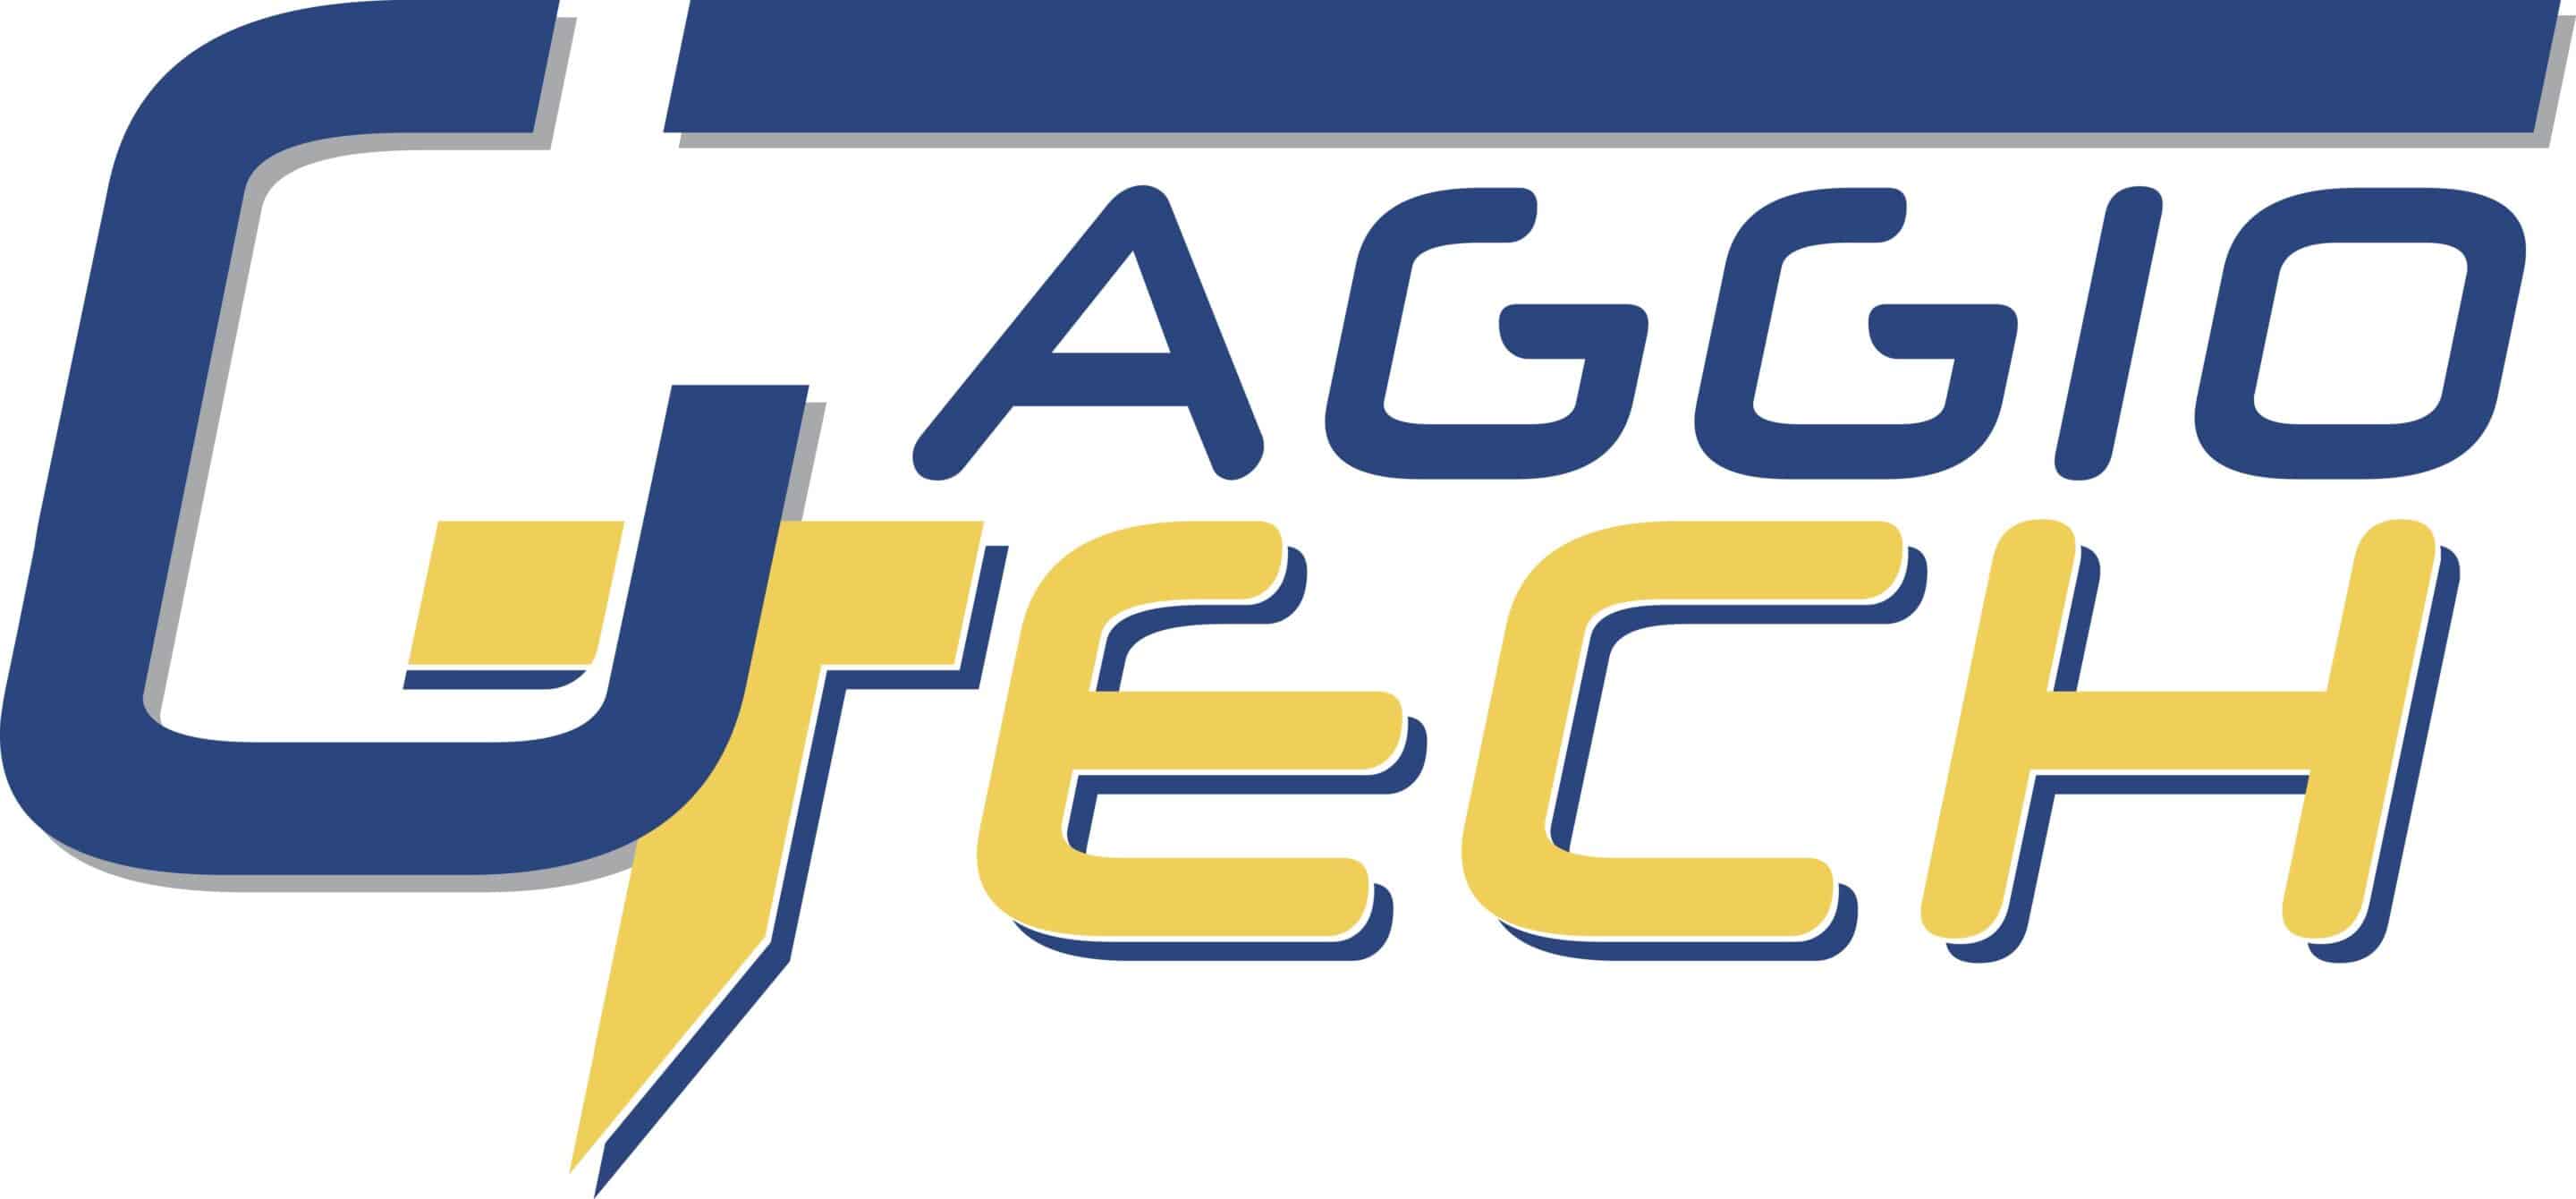 Gaggio tech logo 